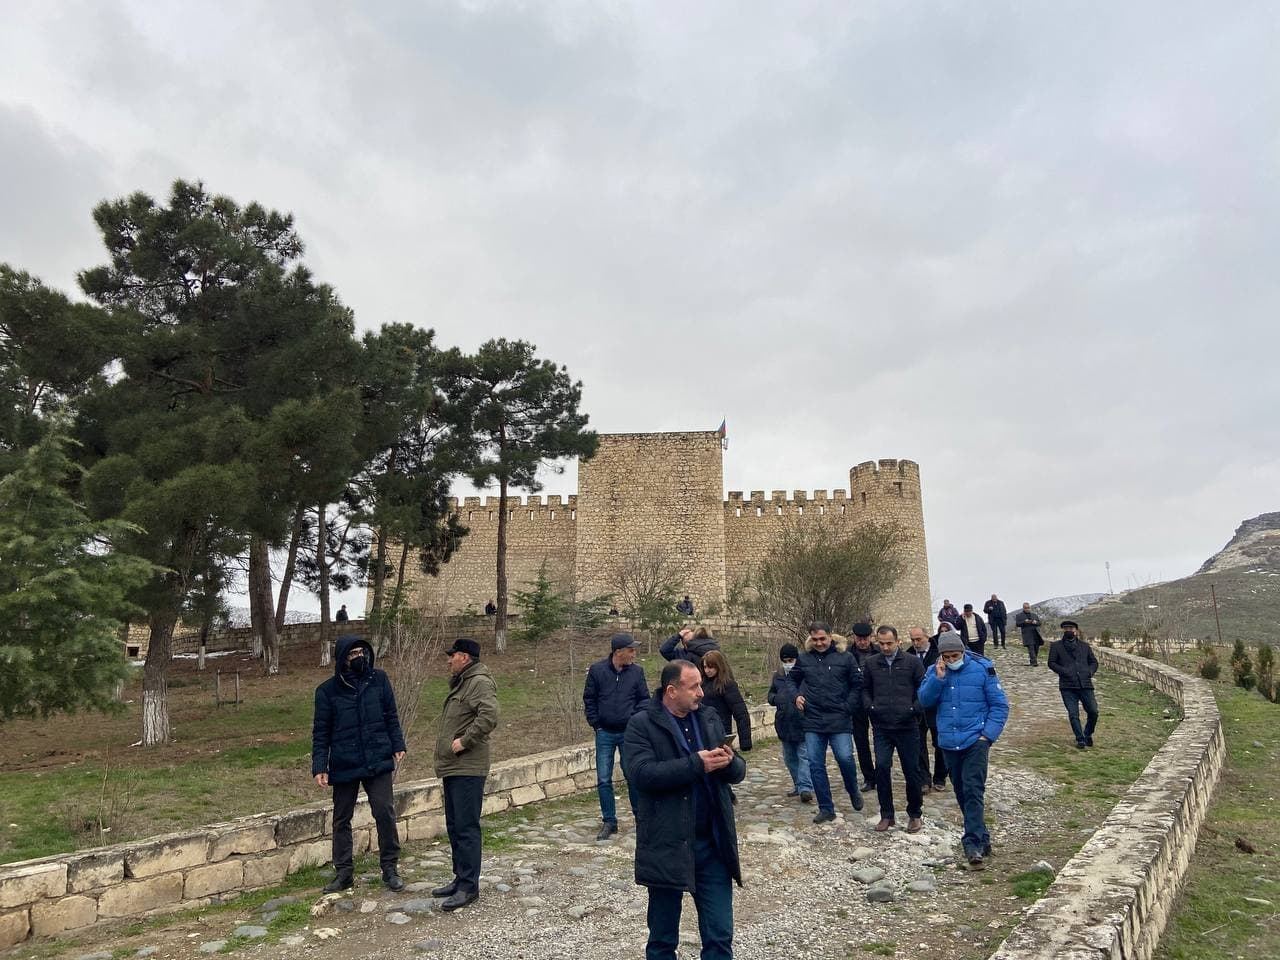 История создания крепости Шахбулаг, или Как тюркские правители короновались в Священном Карабахе (ФОТО)